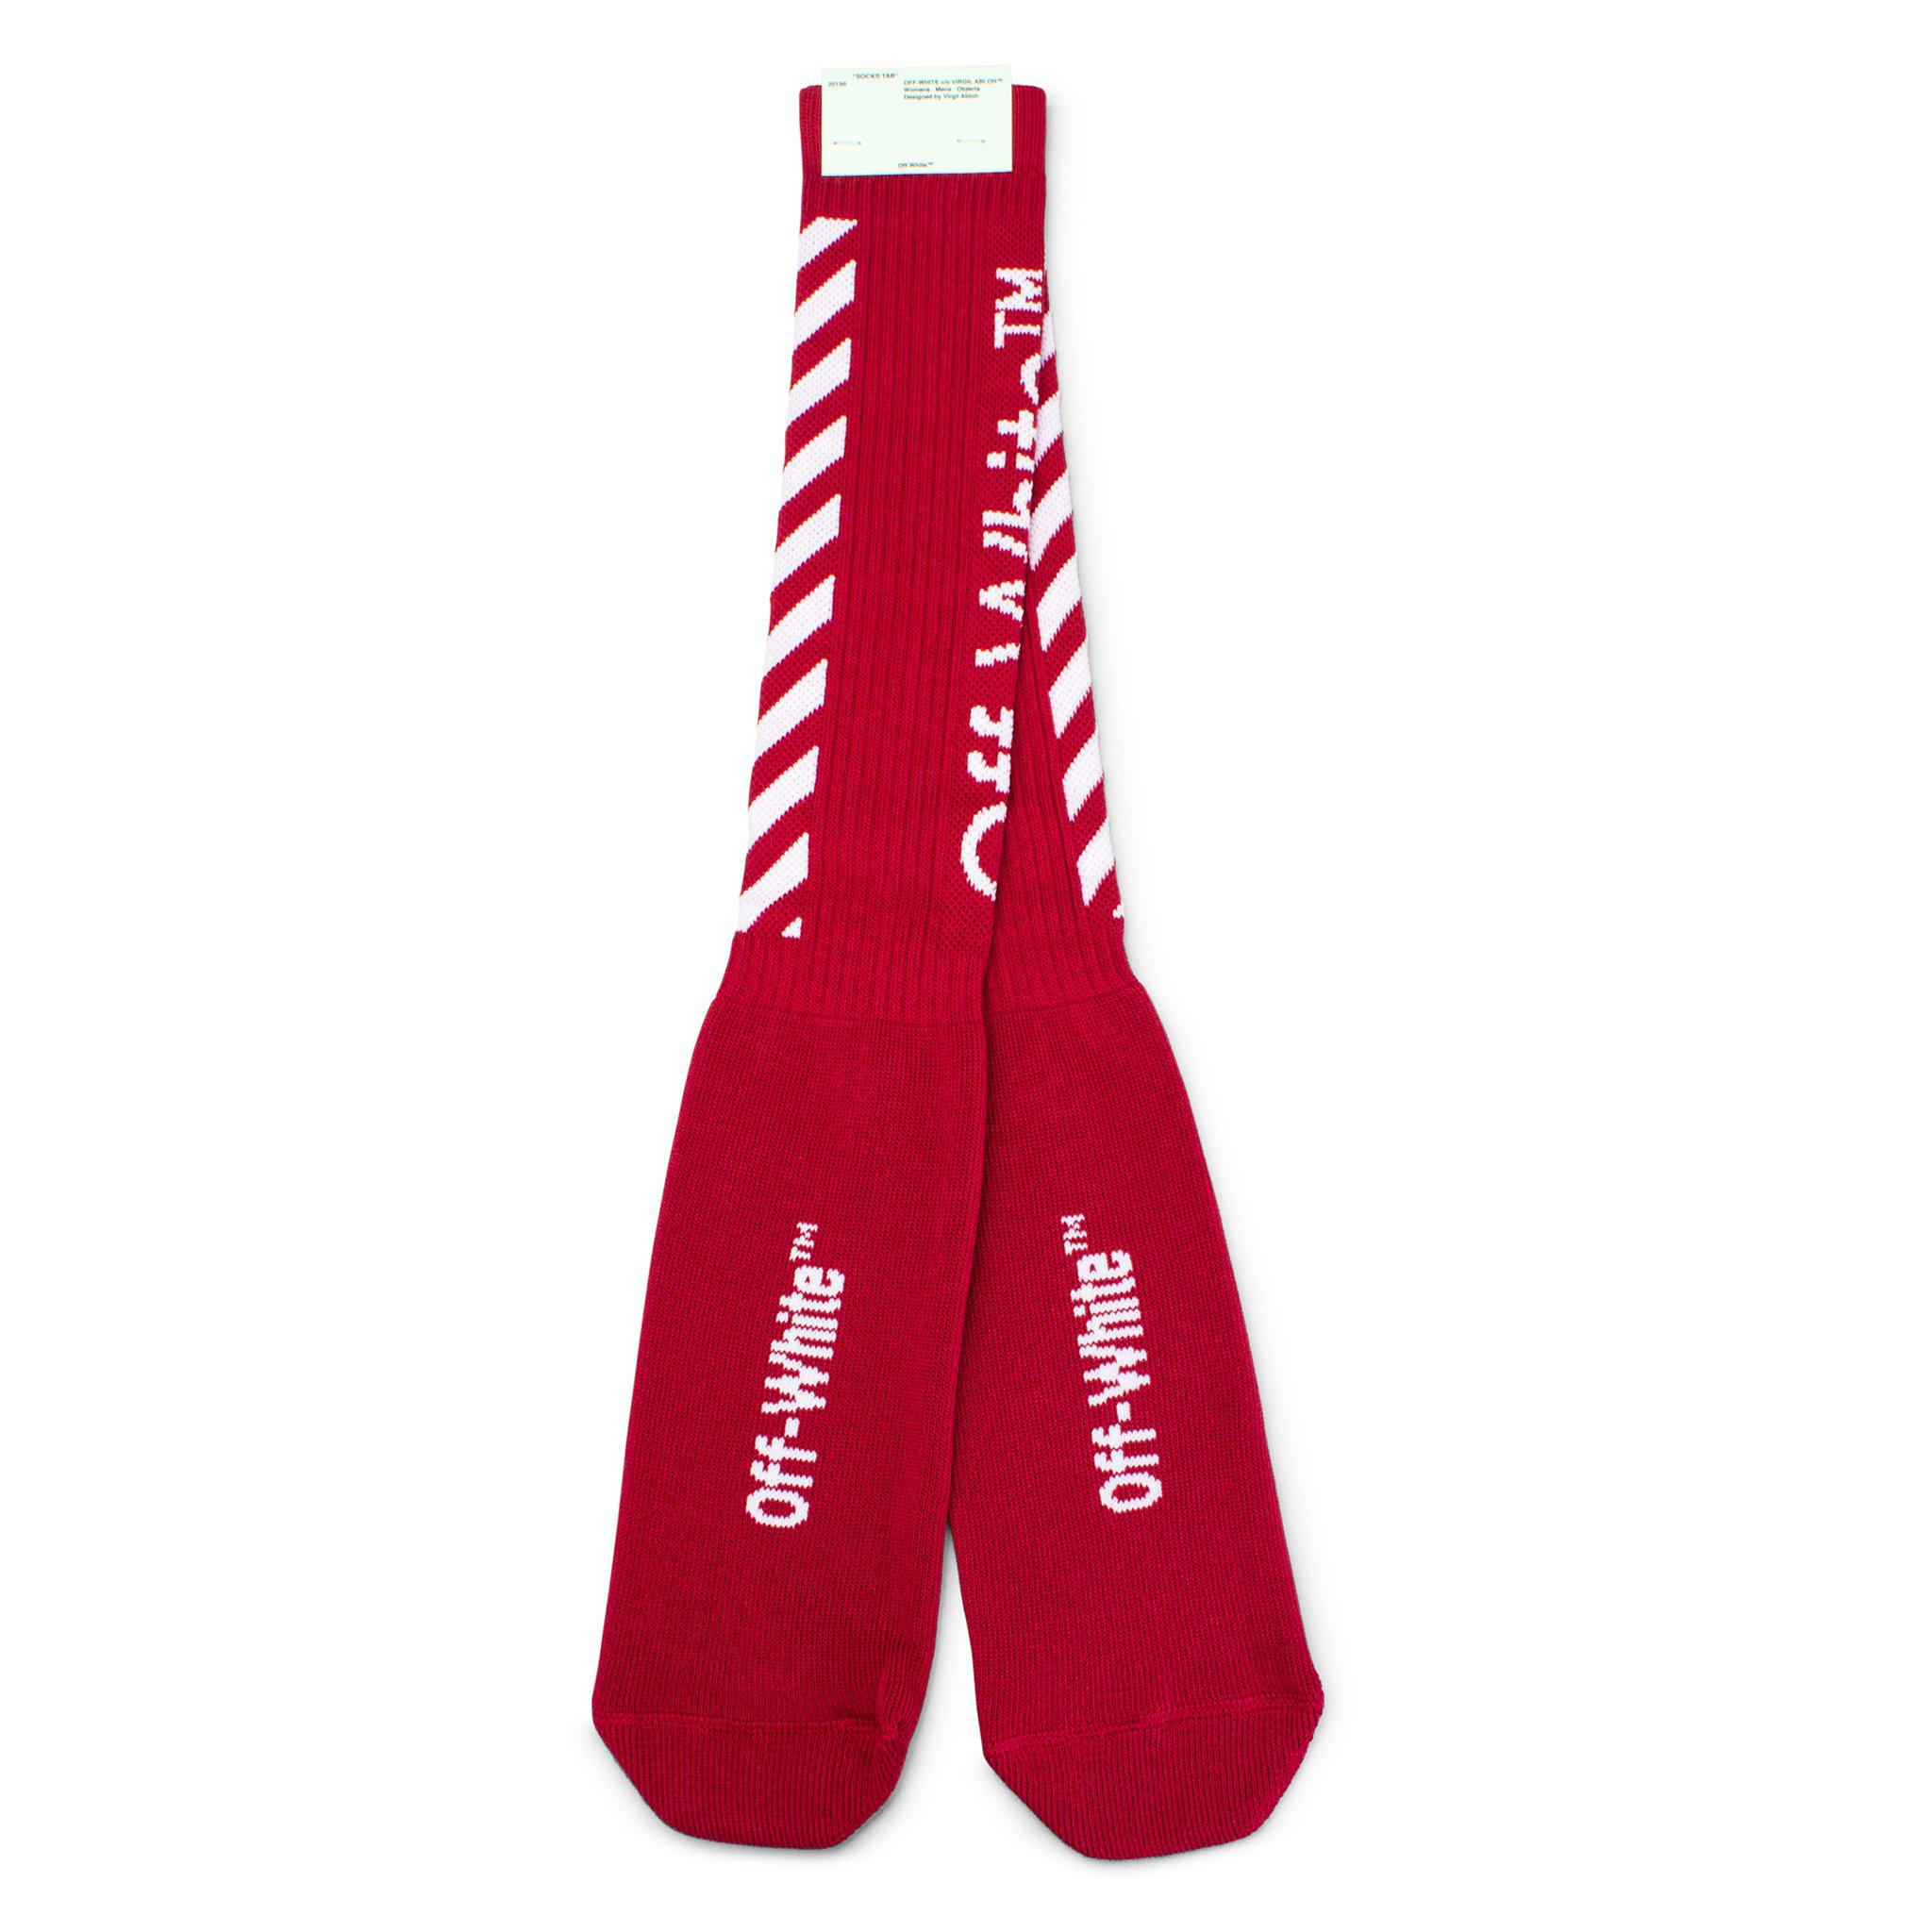 Off-White c/o Virgil Abloh Synthetic Diagonal Socks in Red for Men - Lyst